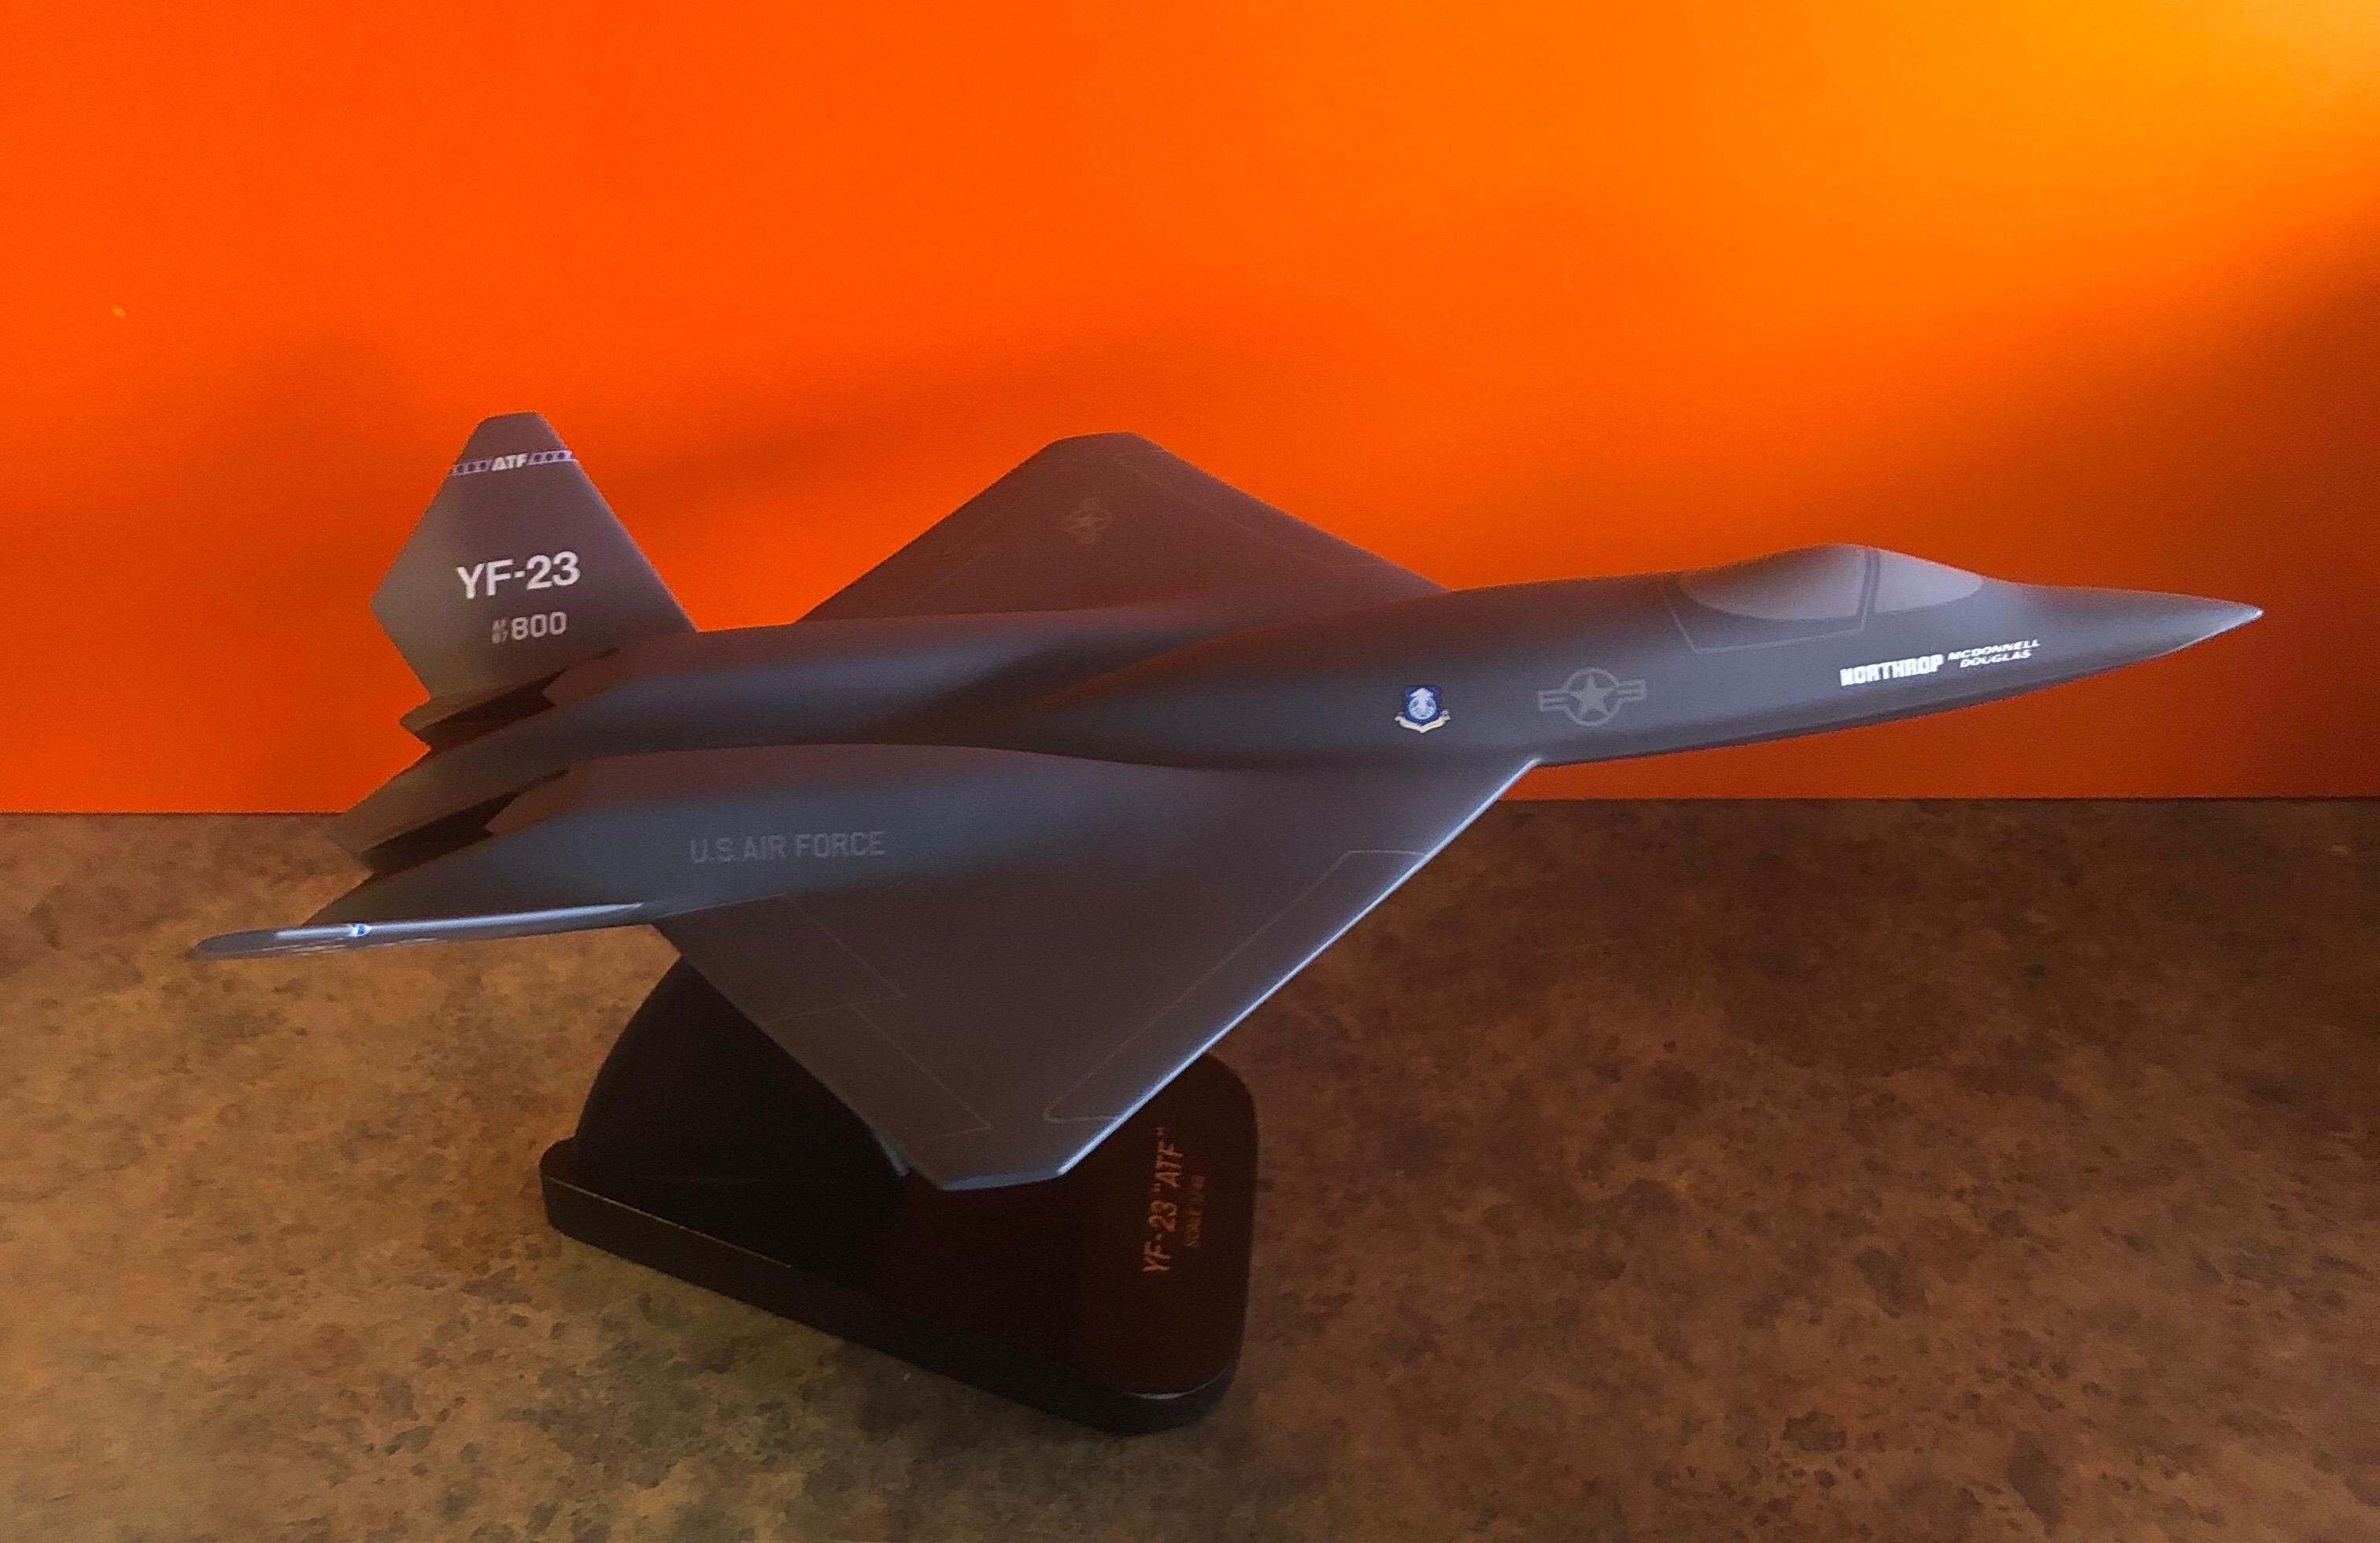 Une très belle maquette de bureau de l'armée de l'air américaine YF-23 Advanced Tactical Fighter (ATF), datant de la fin des années 1980. La pièce est en très bon état et de très haute qualité. Il est en bois et monté sur une base triangulaire en